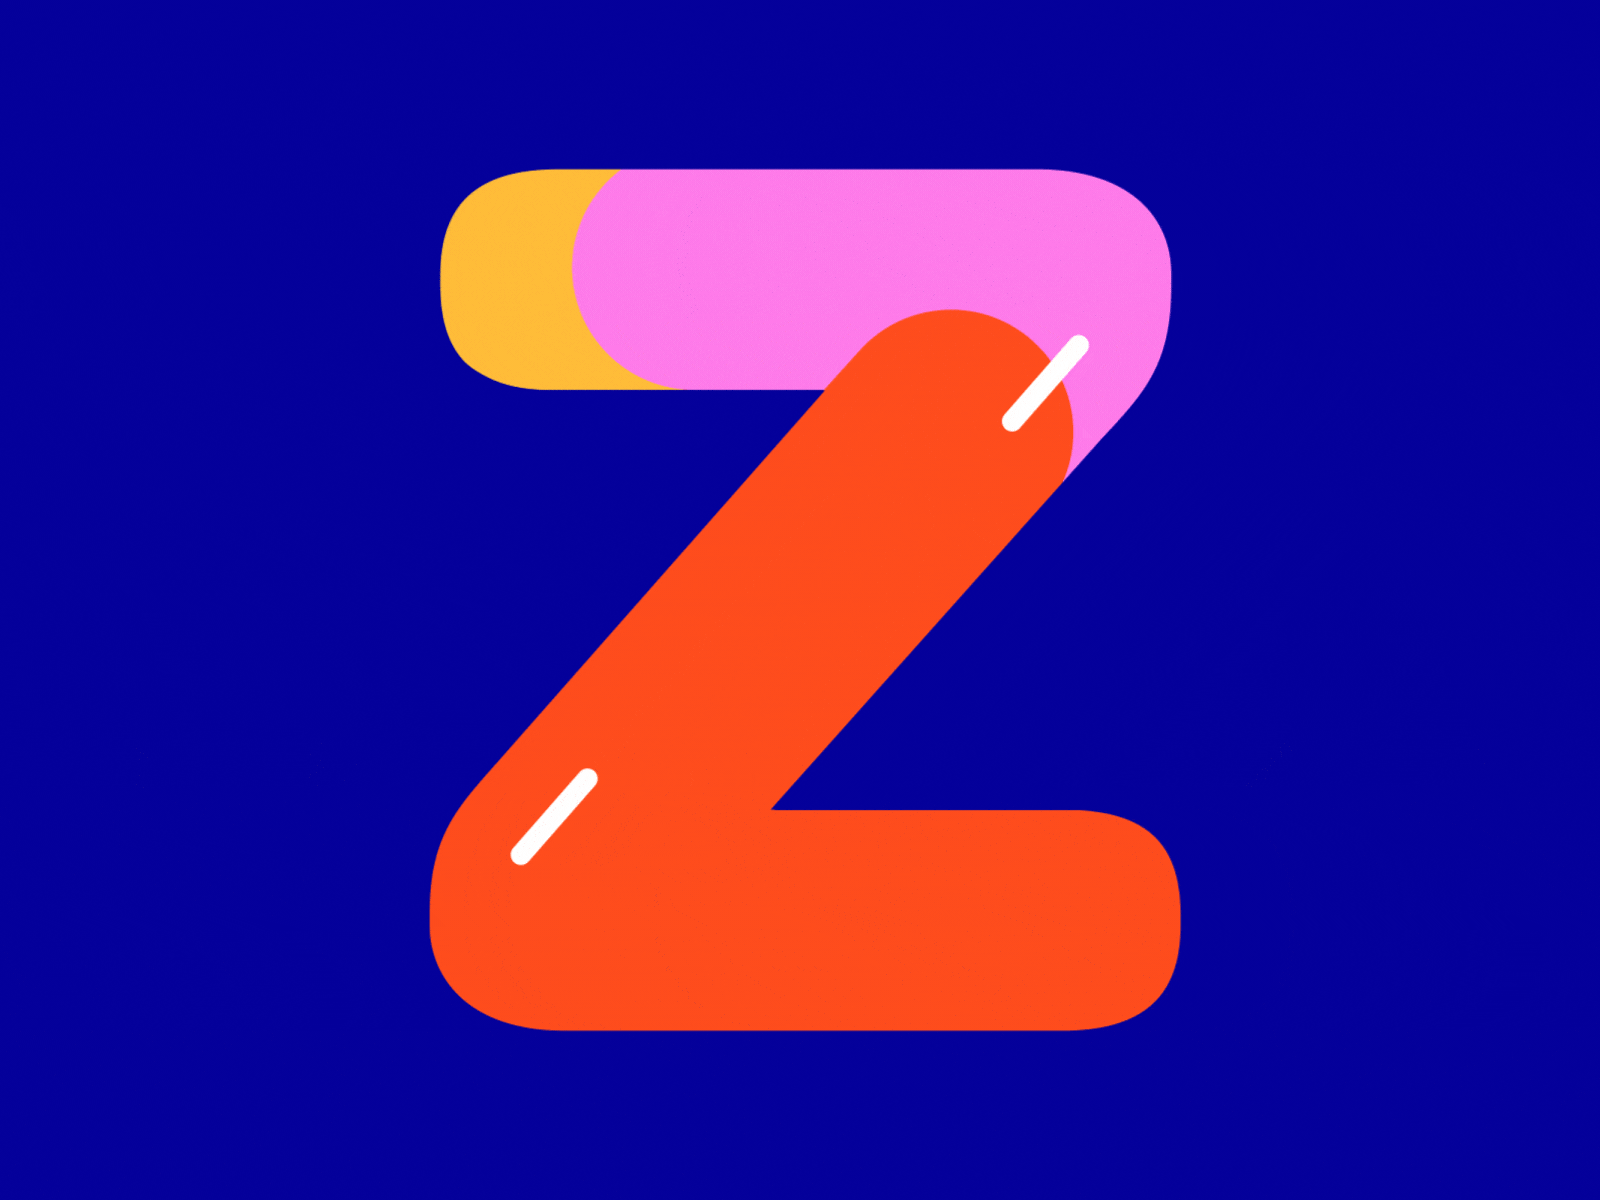 36 Days of Type / Z